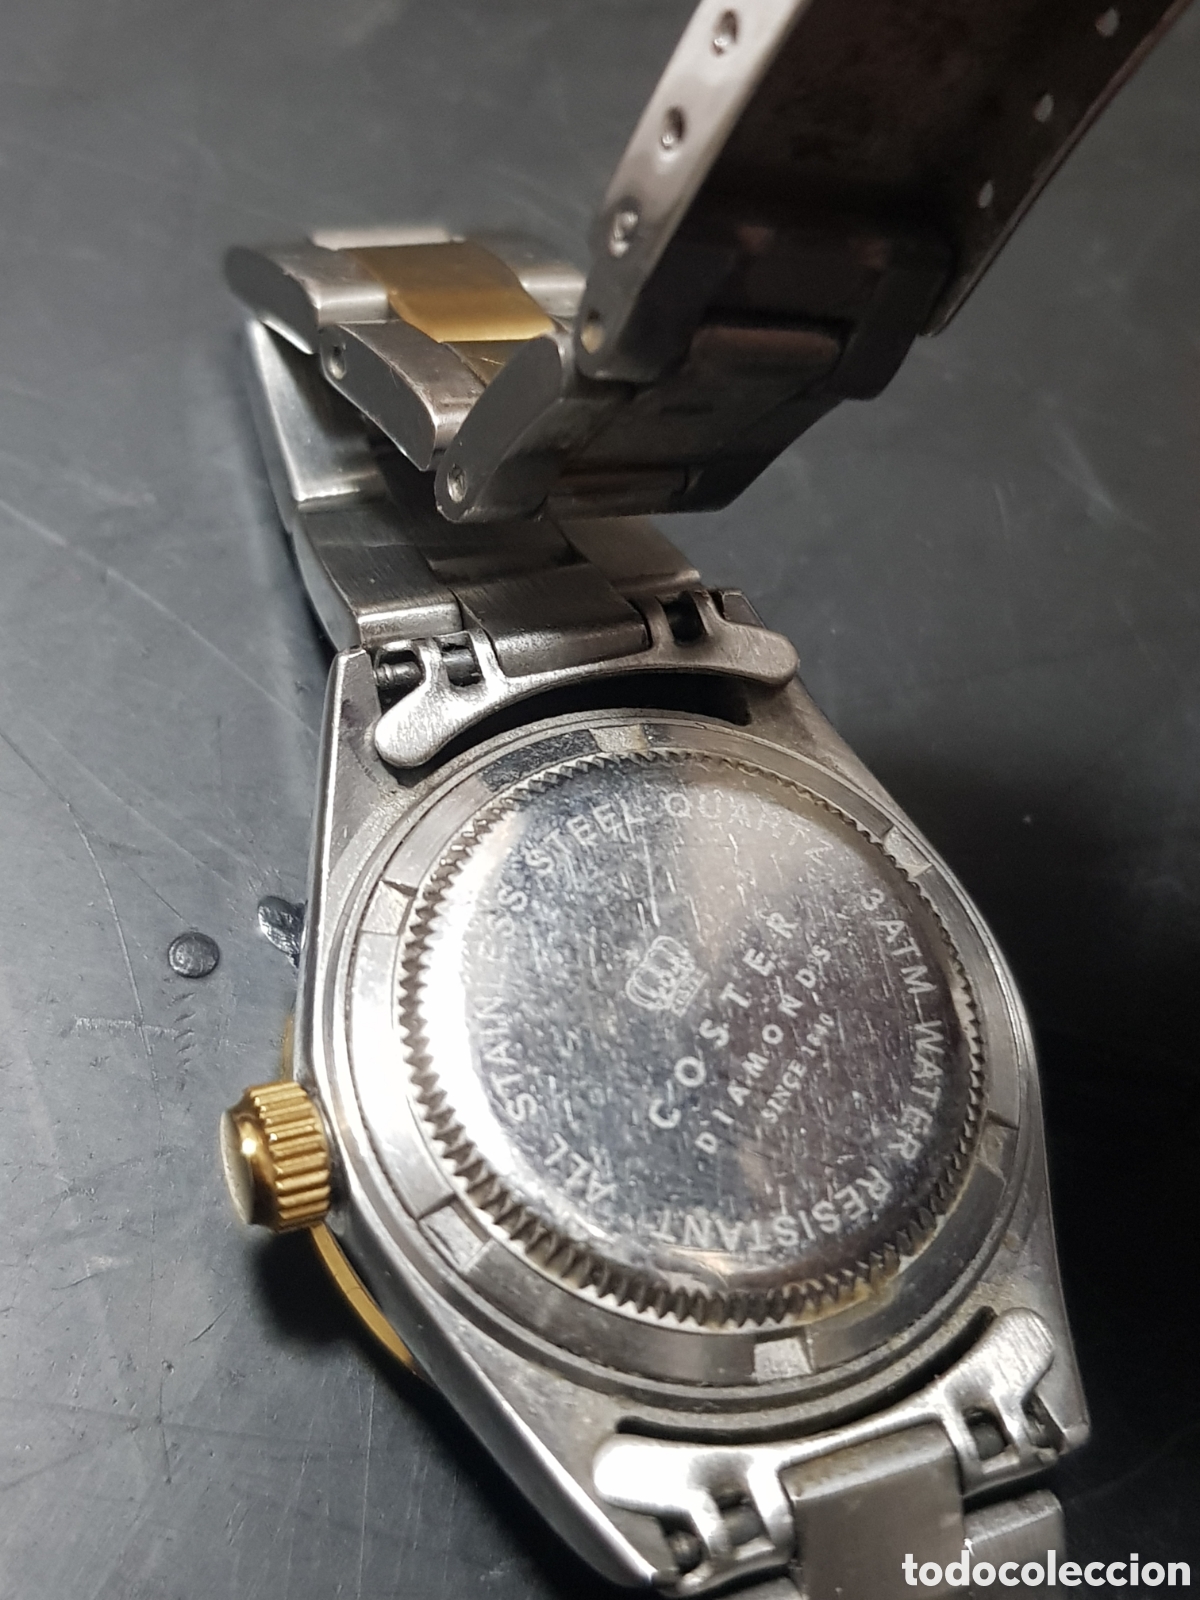 De trato fácil Cuadrante por no mencionar antiguo reloj coster diamonds original - Compra venta en todocoleccion